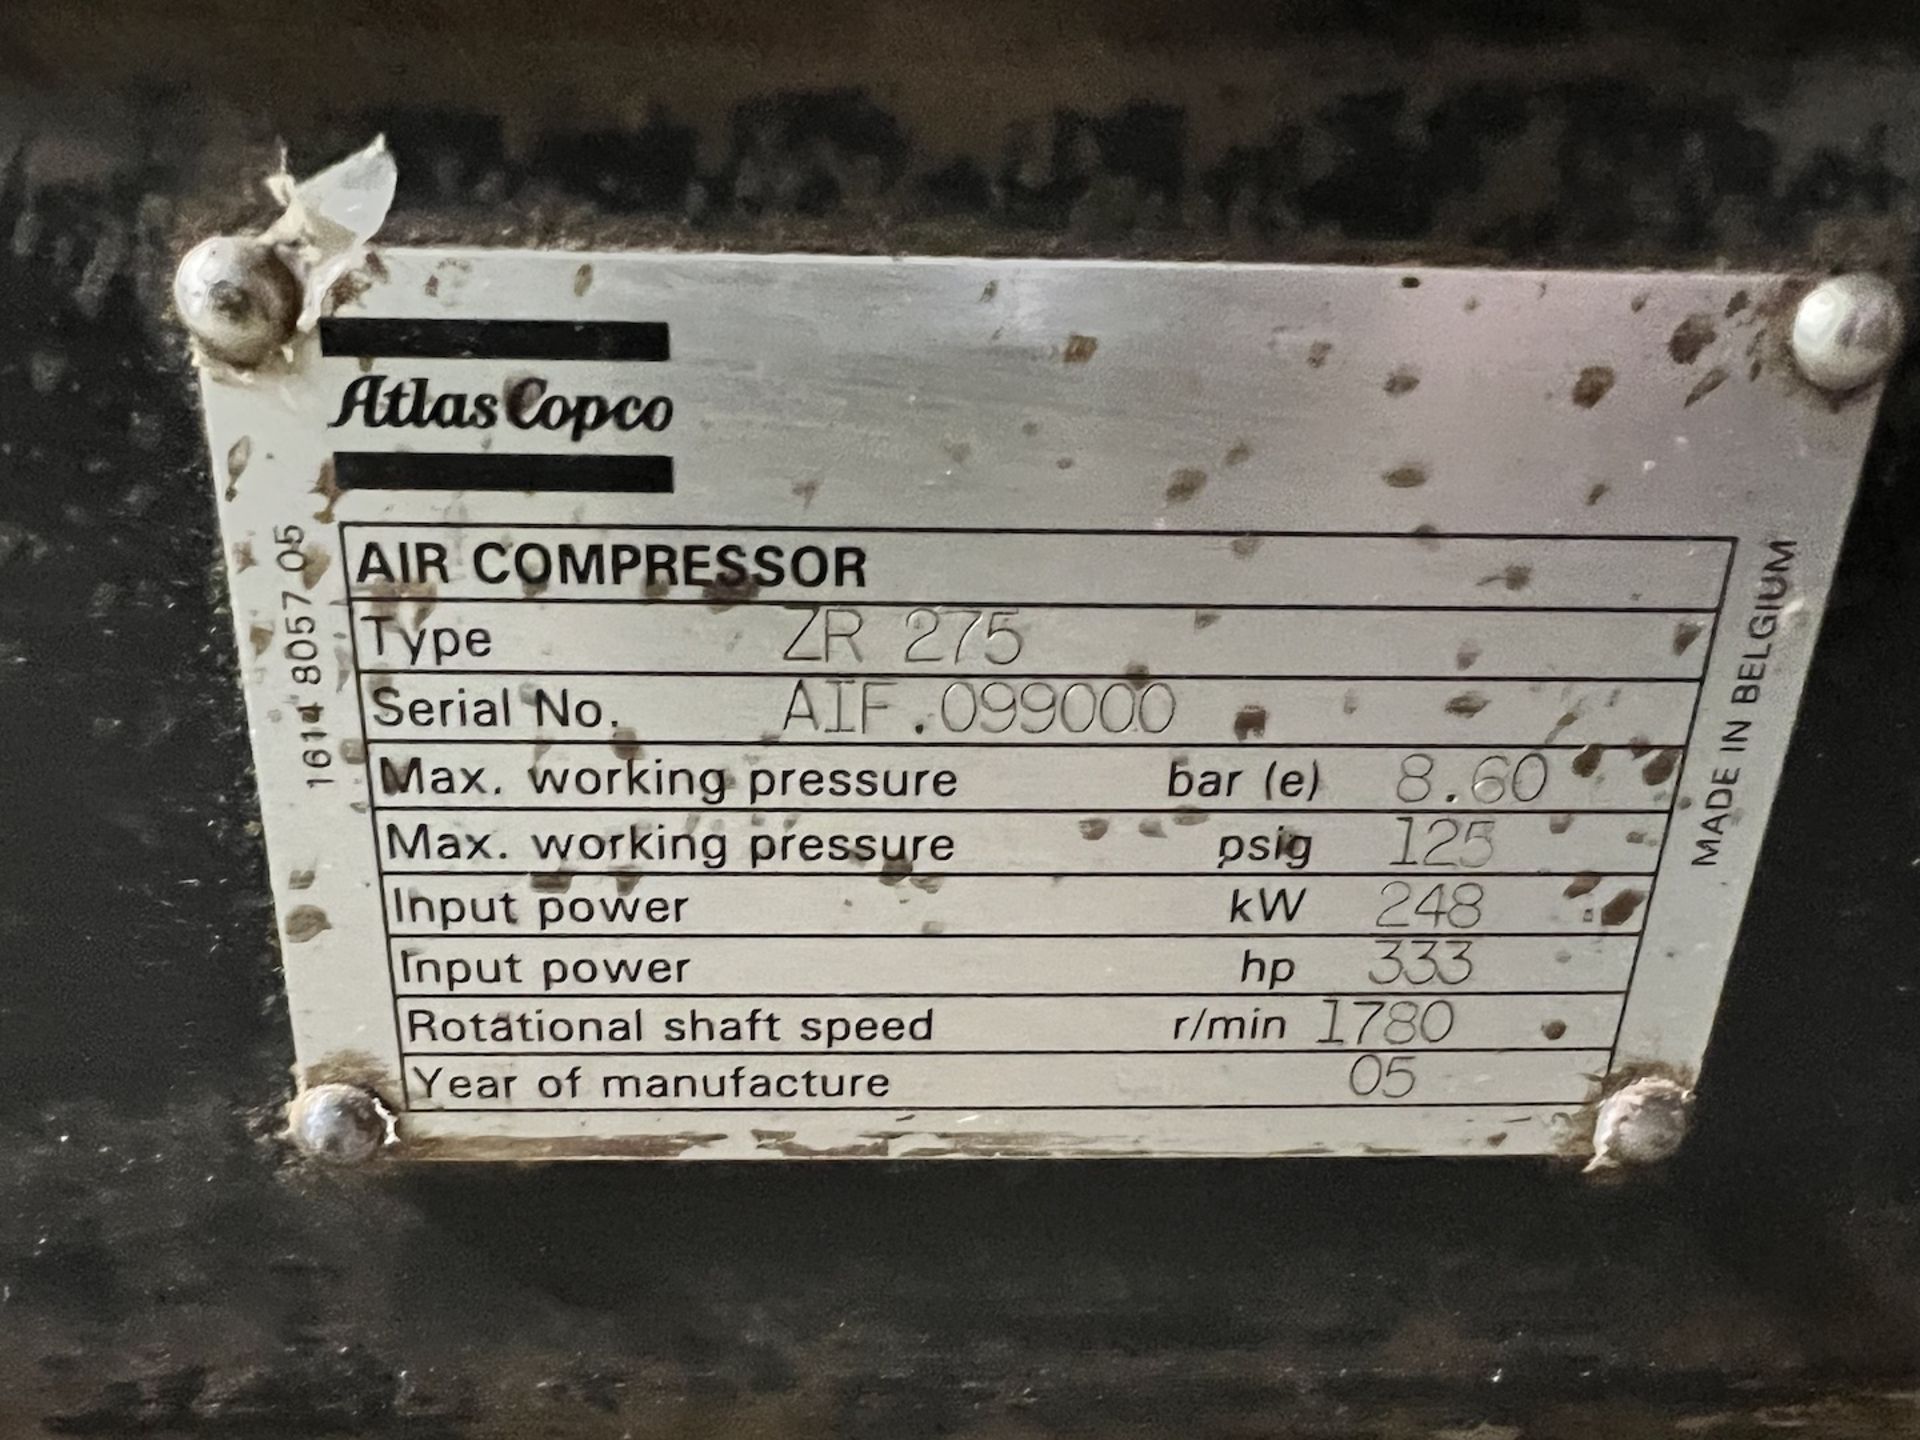 2014 ATLAS COPCO AIR COMPRESSOR, MODEL ZR 275, S/N AIF 099000, 333 HP, 8.6 BAR, 125 PSI - Image 21 of 35